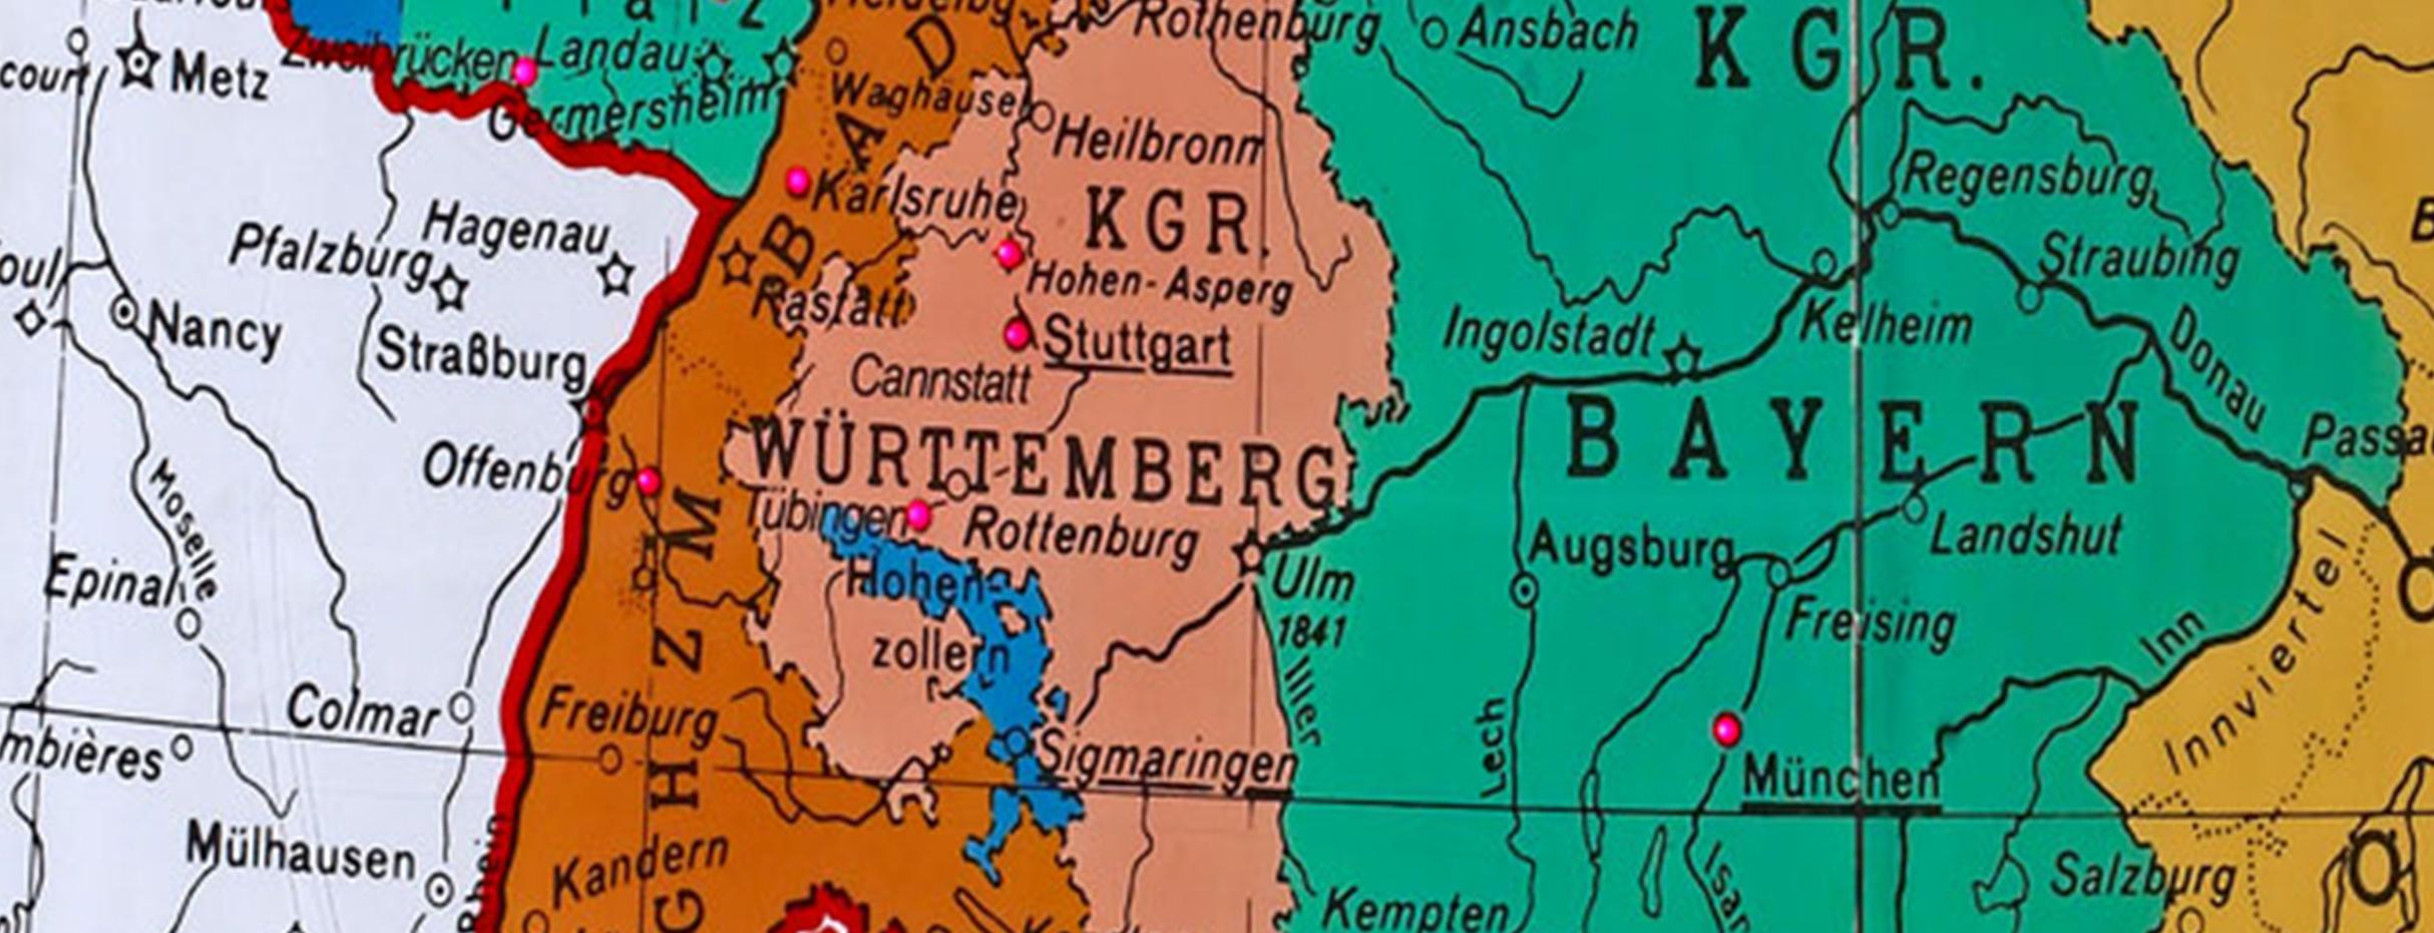 Der Deutsche Bund 1815 (Ausschnitt) - Die Punkte bezeichnen Orte mit Verfassungen im Vormärz. (Bild: Landesmedienzentrum Baden-Württemberg)